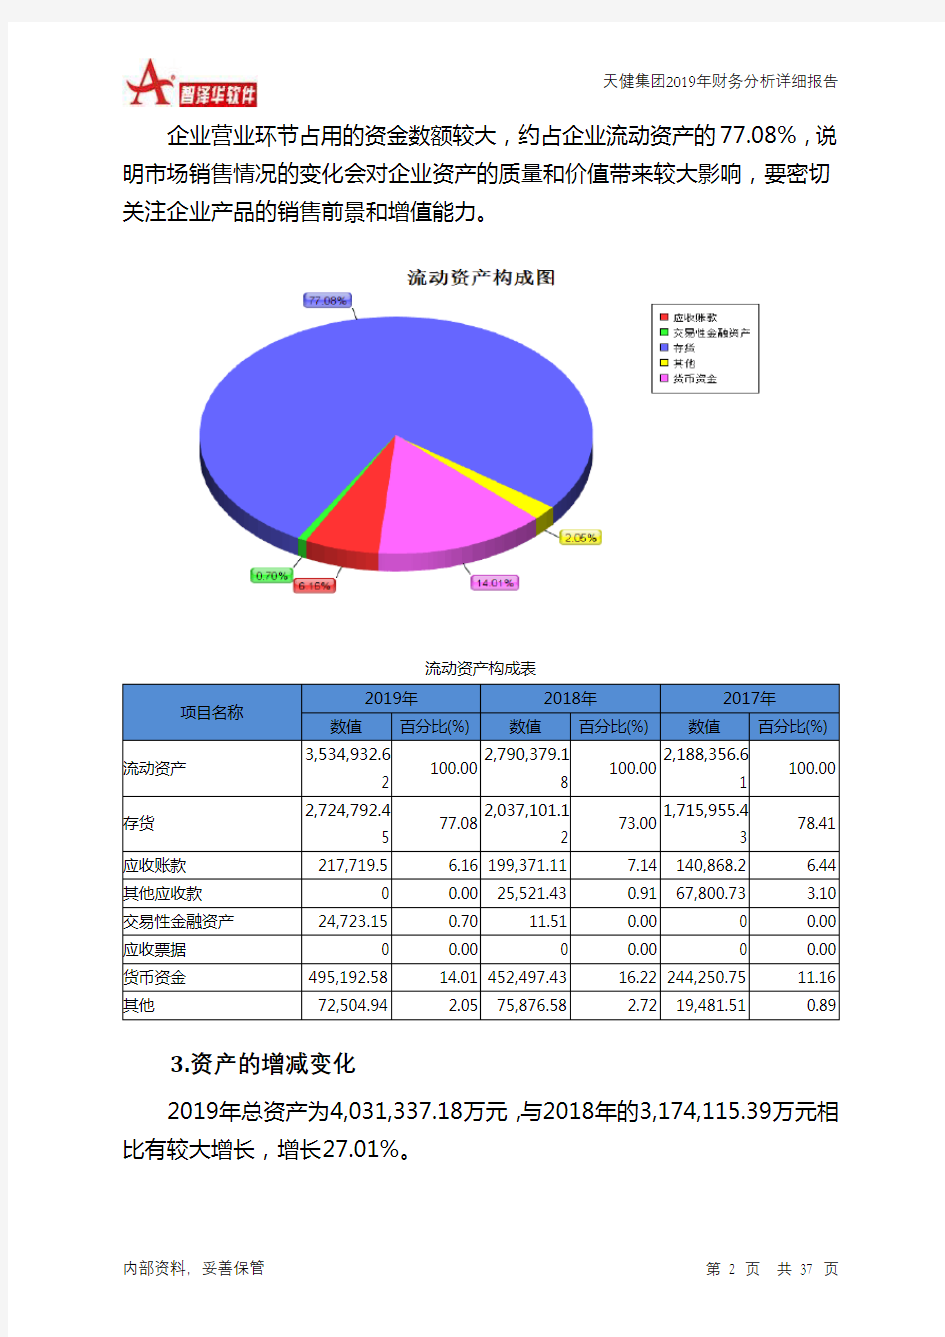 天健集团2019年财务分析详细报告